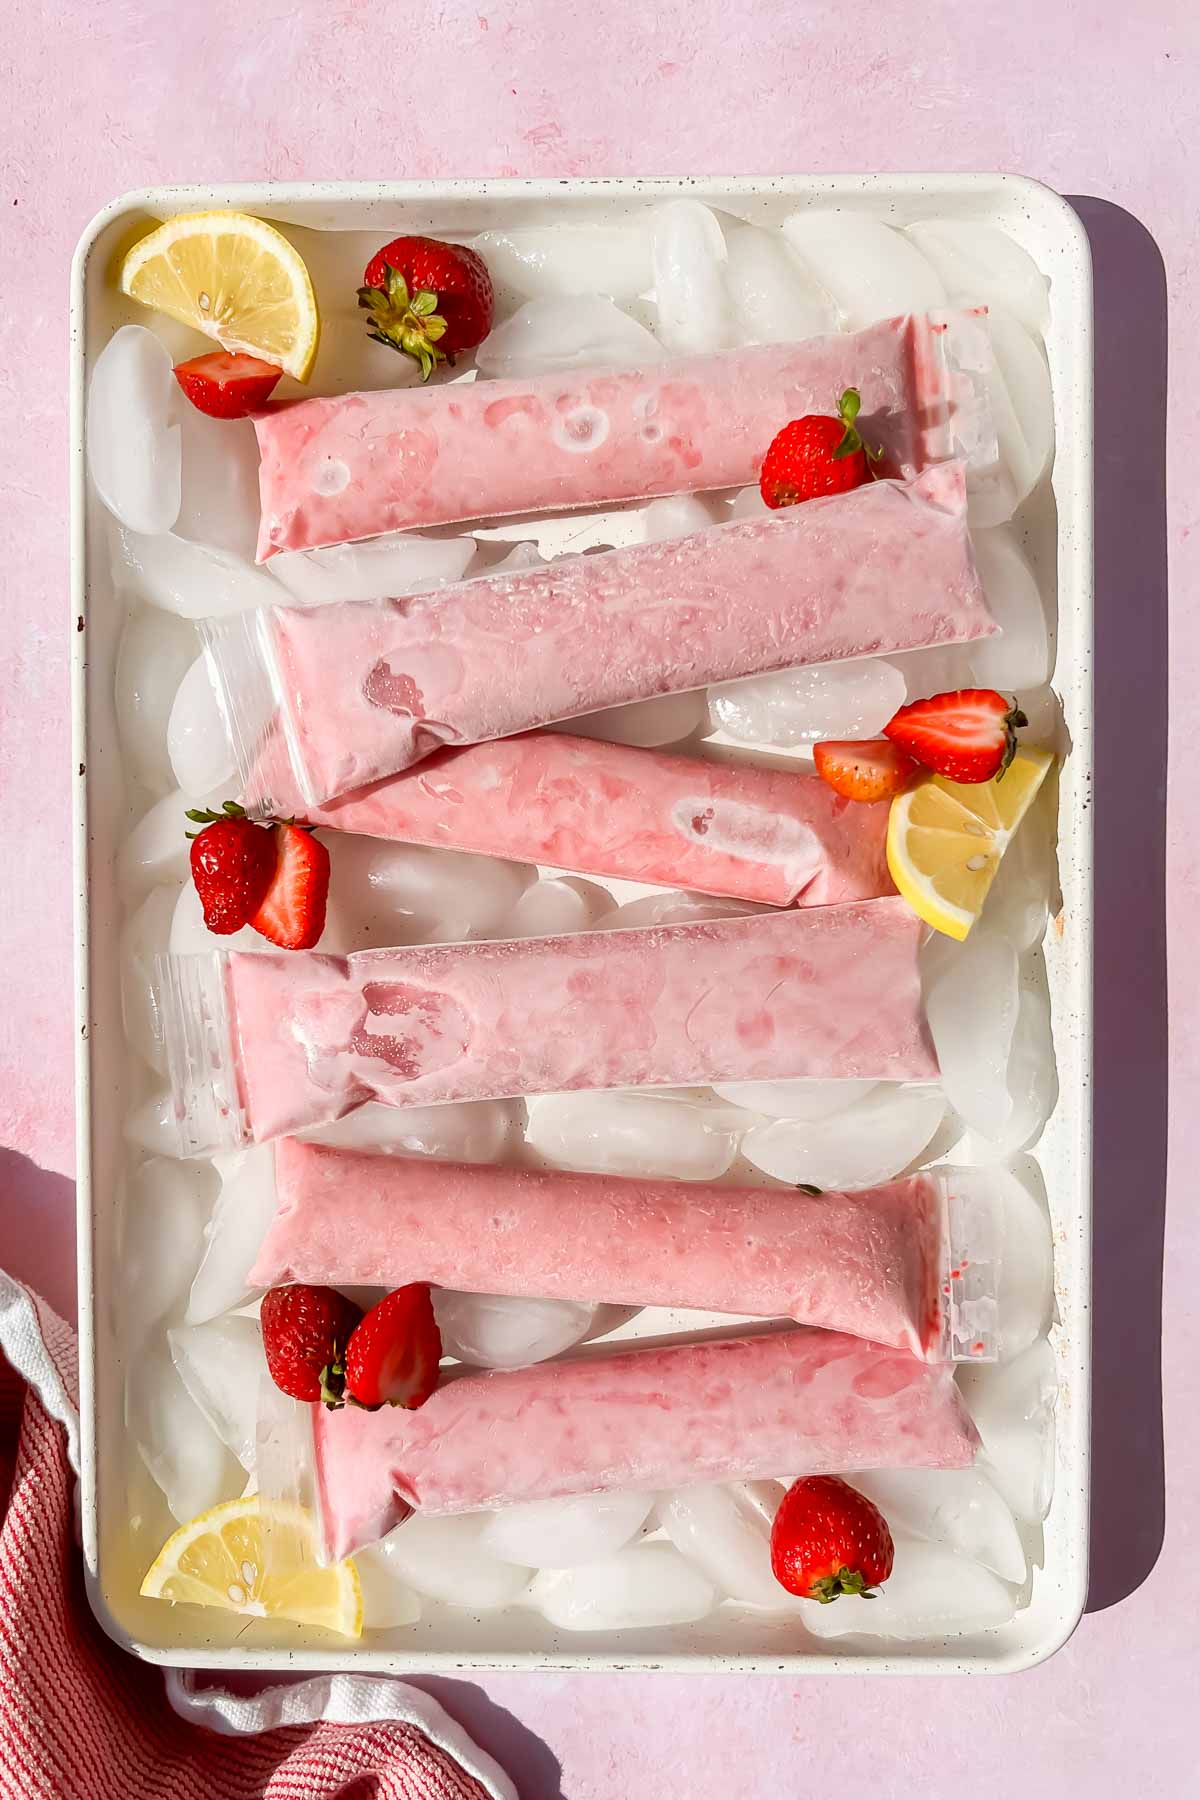 frozen yogurt tubes on ice on white baking tray.